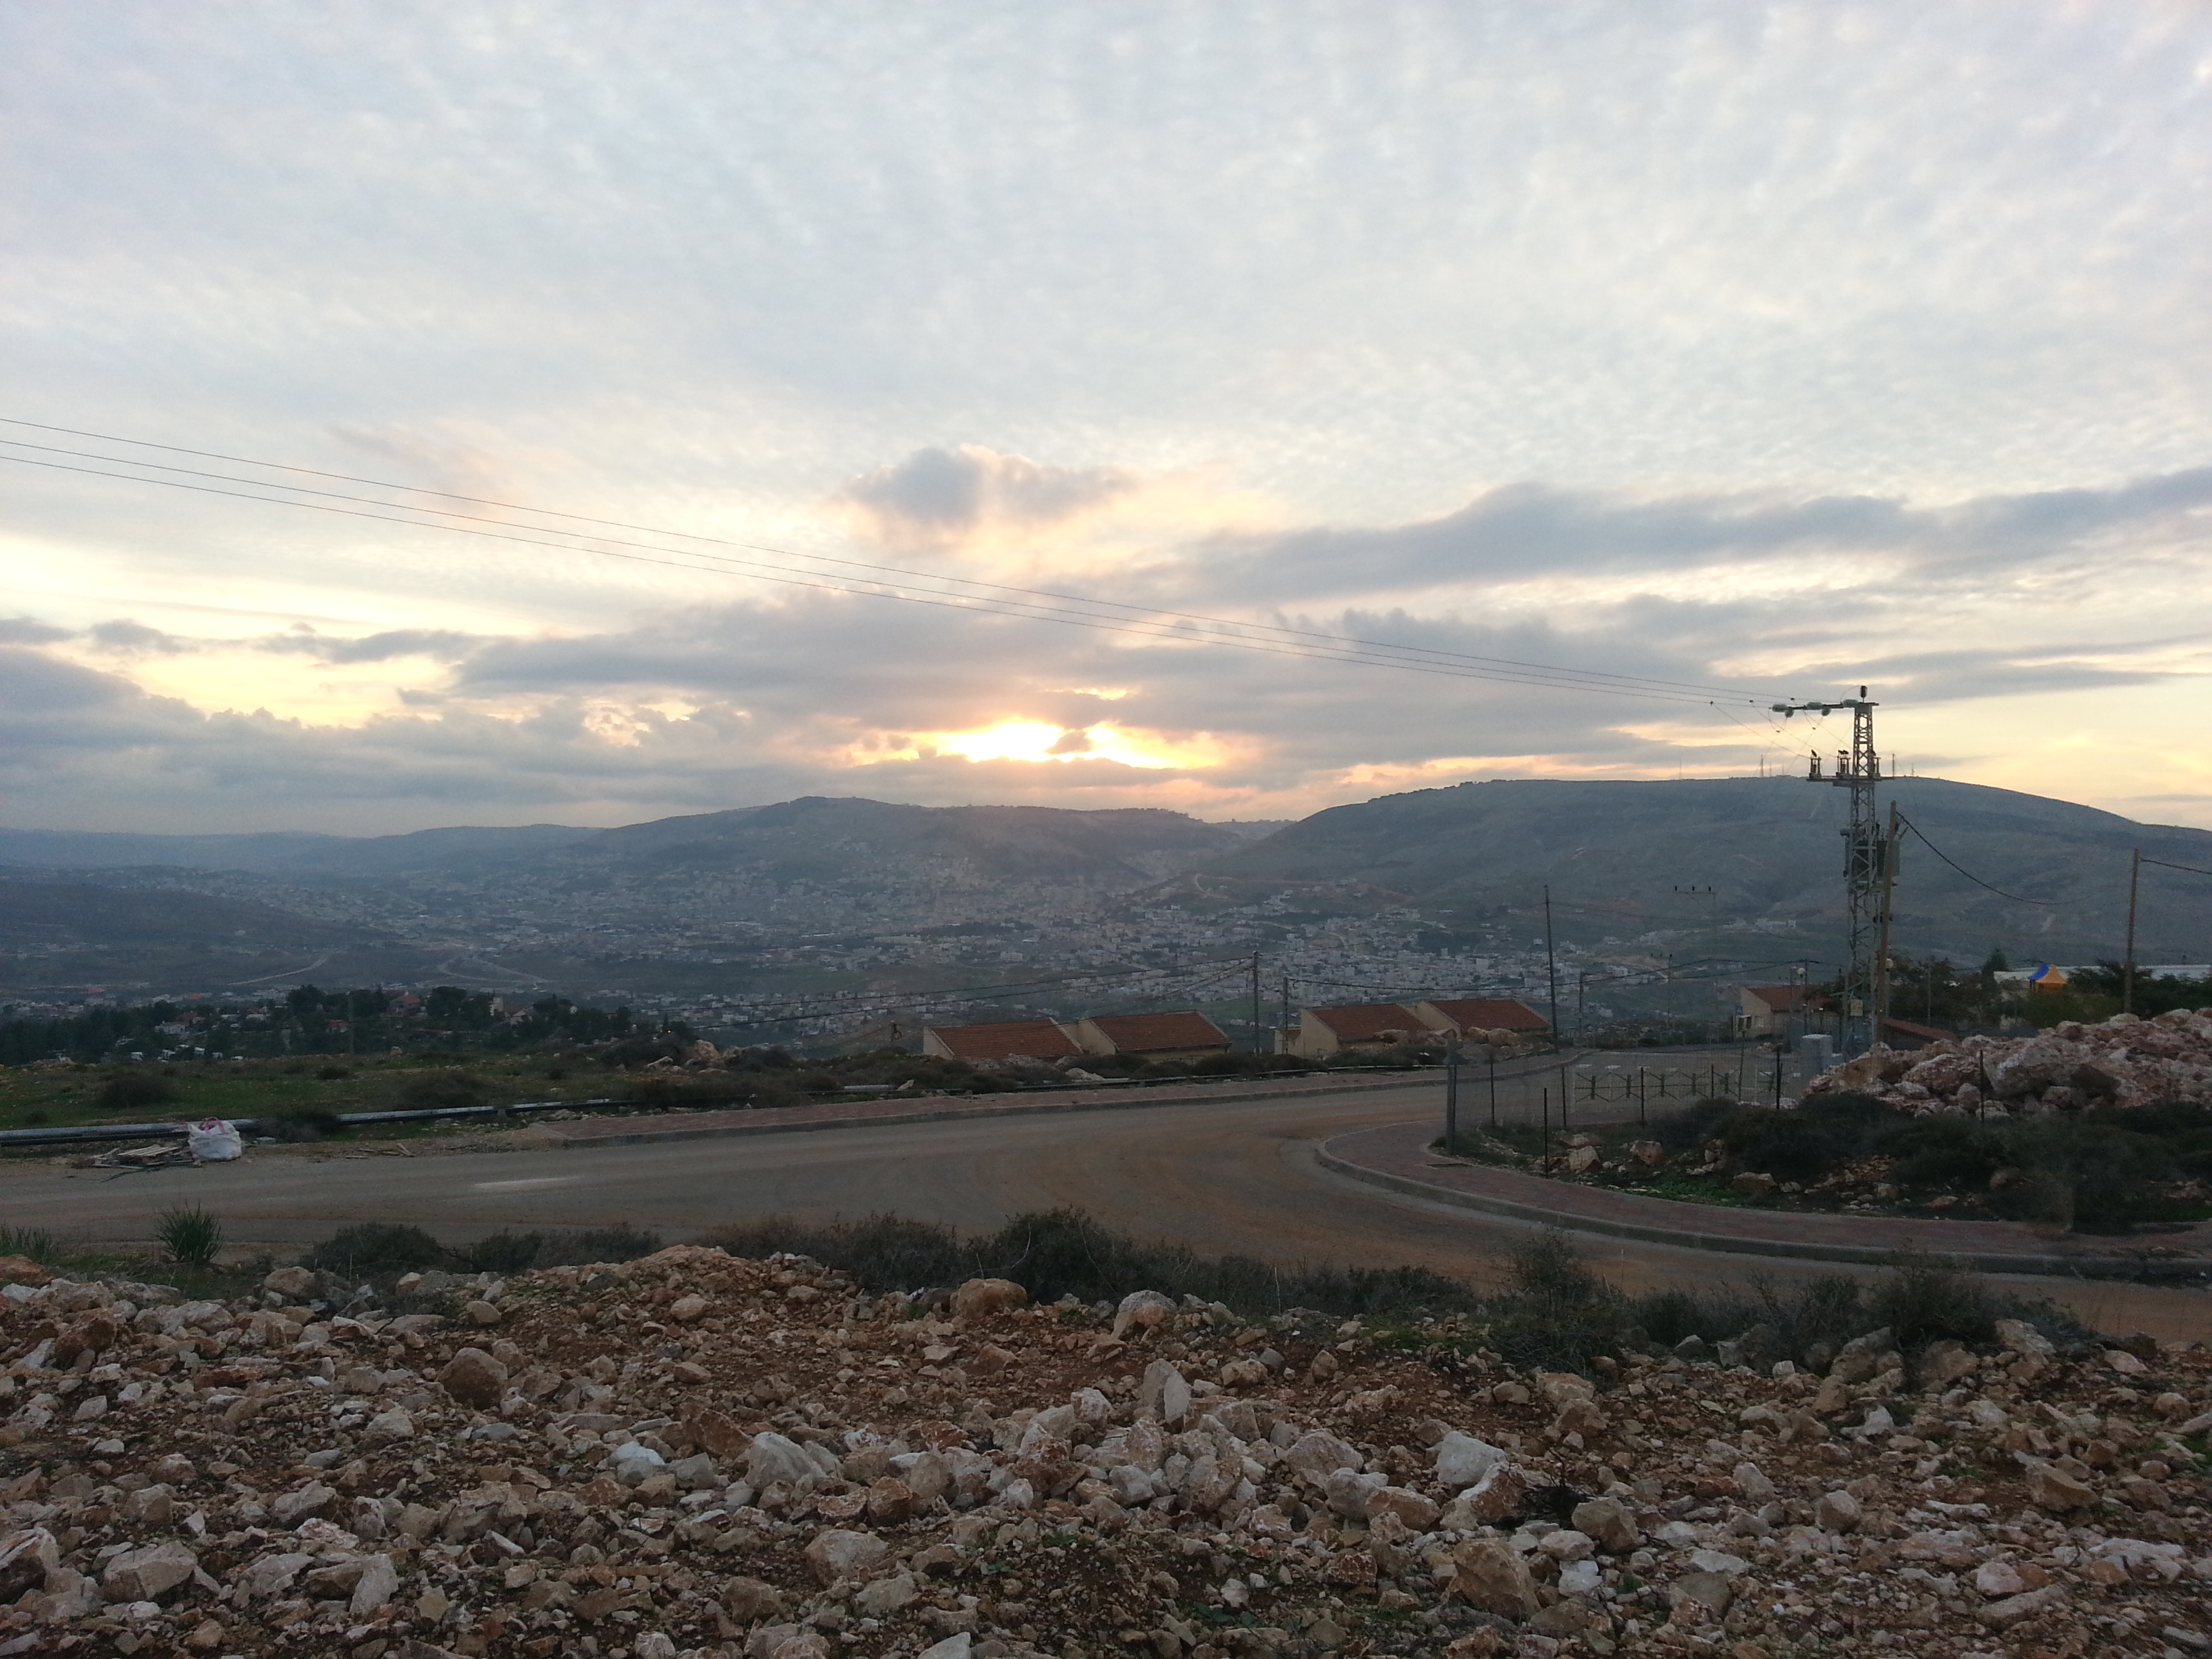 Sunset over Shechem